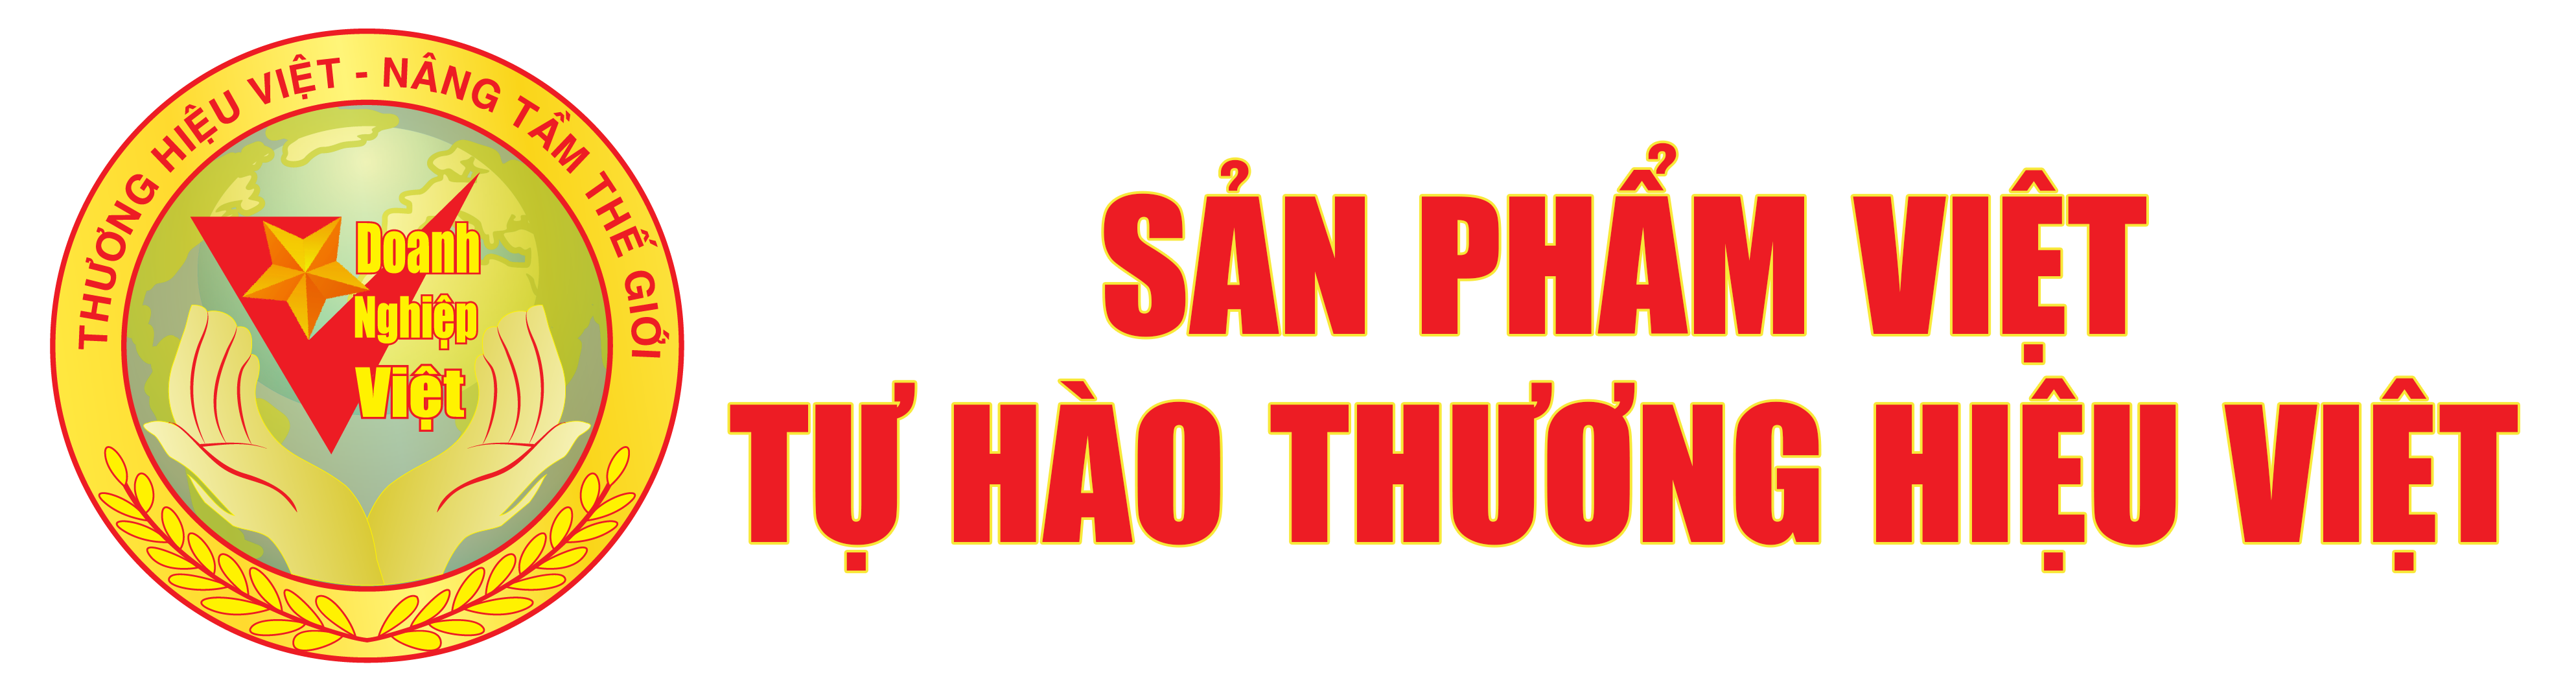 Techonology Producst Viet Nam Quality